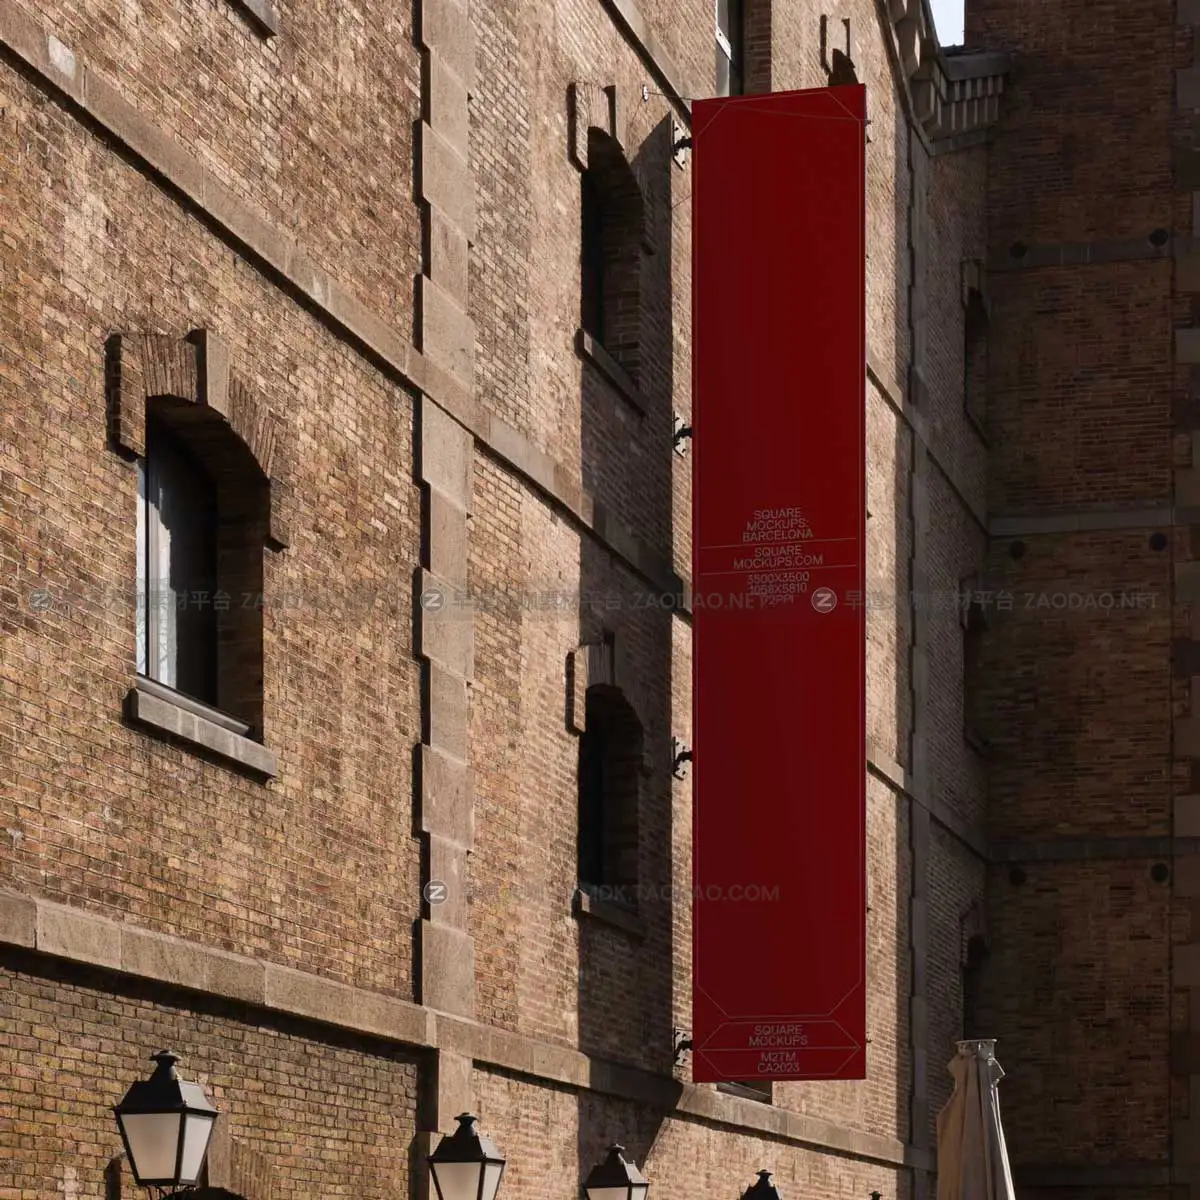 高级欧美城市街头商场户外墙体广告牌招贴海报设计PS展示效果图样机模板 Billboard Mockup Scene Barcelona Series Vol1插图6